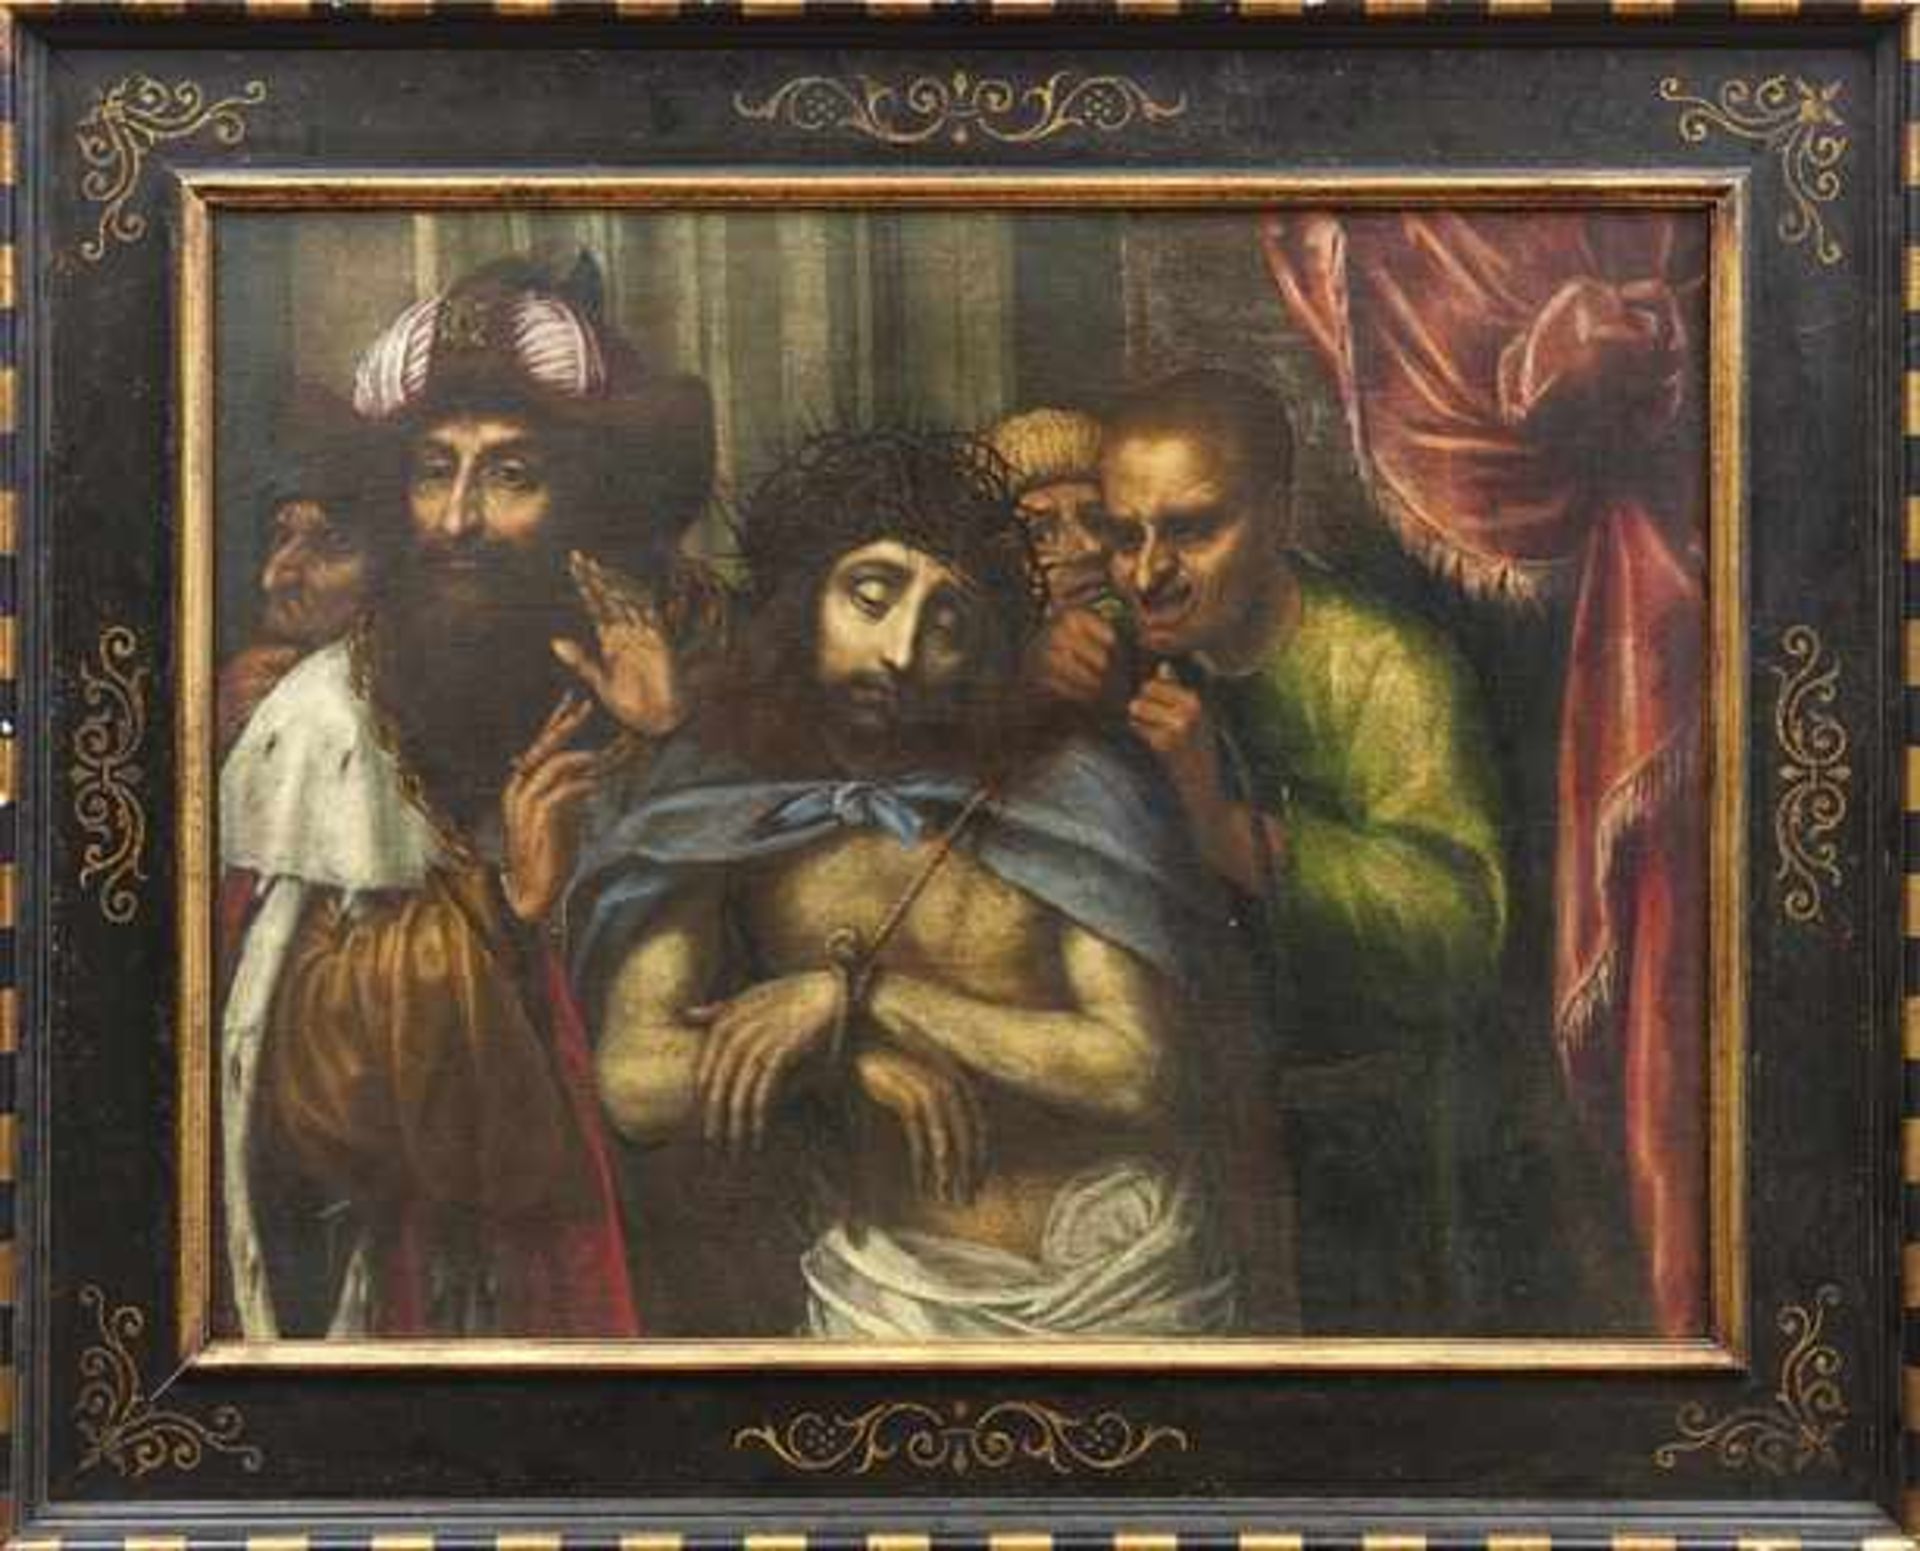 Italienischer Meister des fr. 17. Jahrhunderts Ecce Homo Öl/Lwd., doubl. 76,5 x 101 cm. - Das Werk